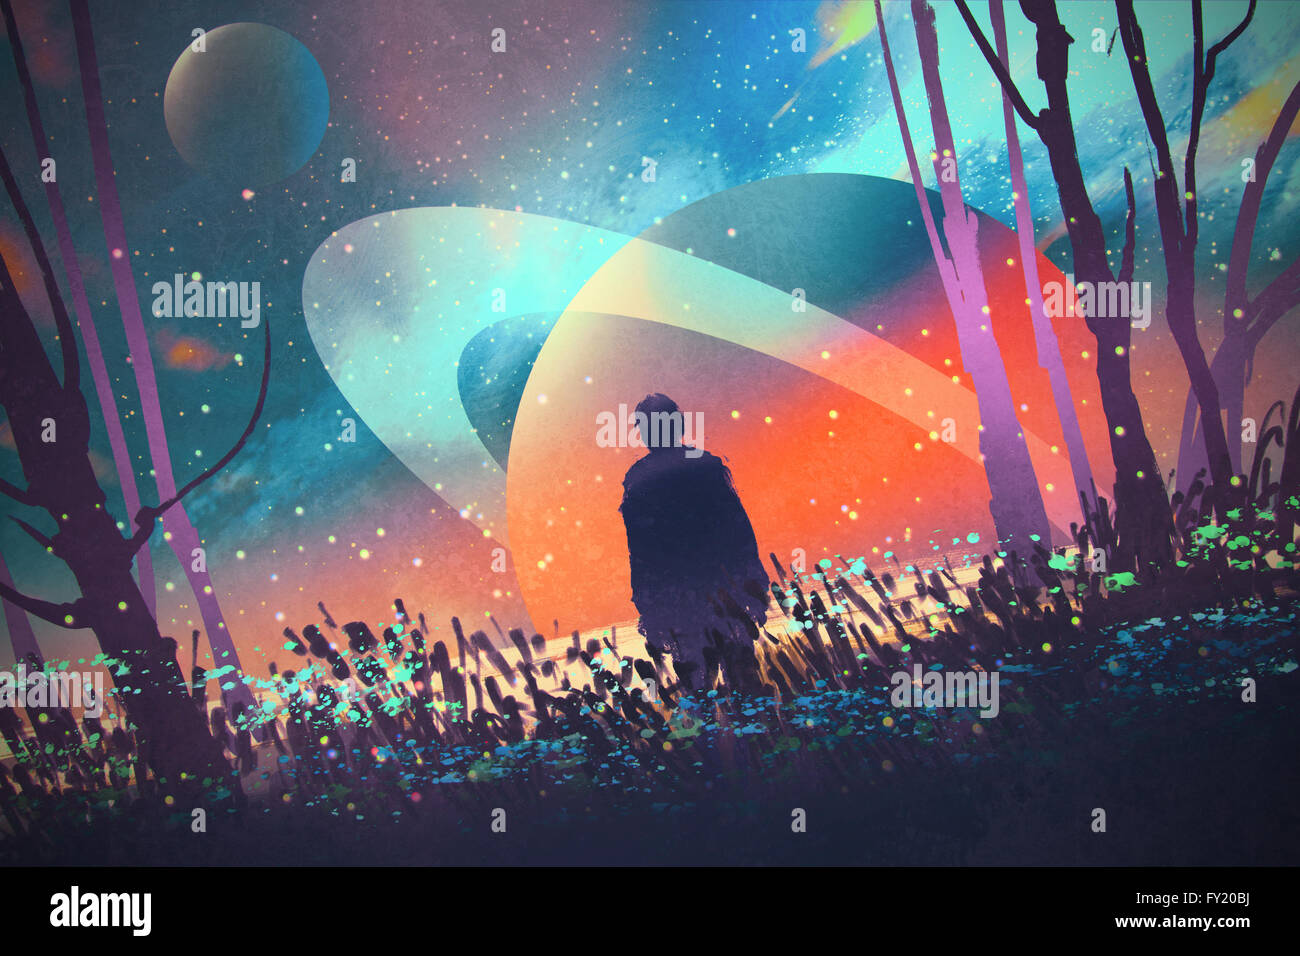 Mann steht allein im Wald mit fiktiven Planeten Hintergrund, Abbildung Stockfoto